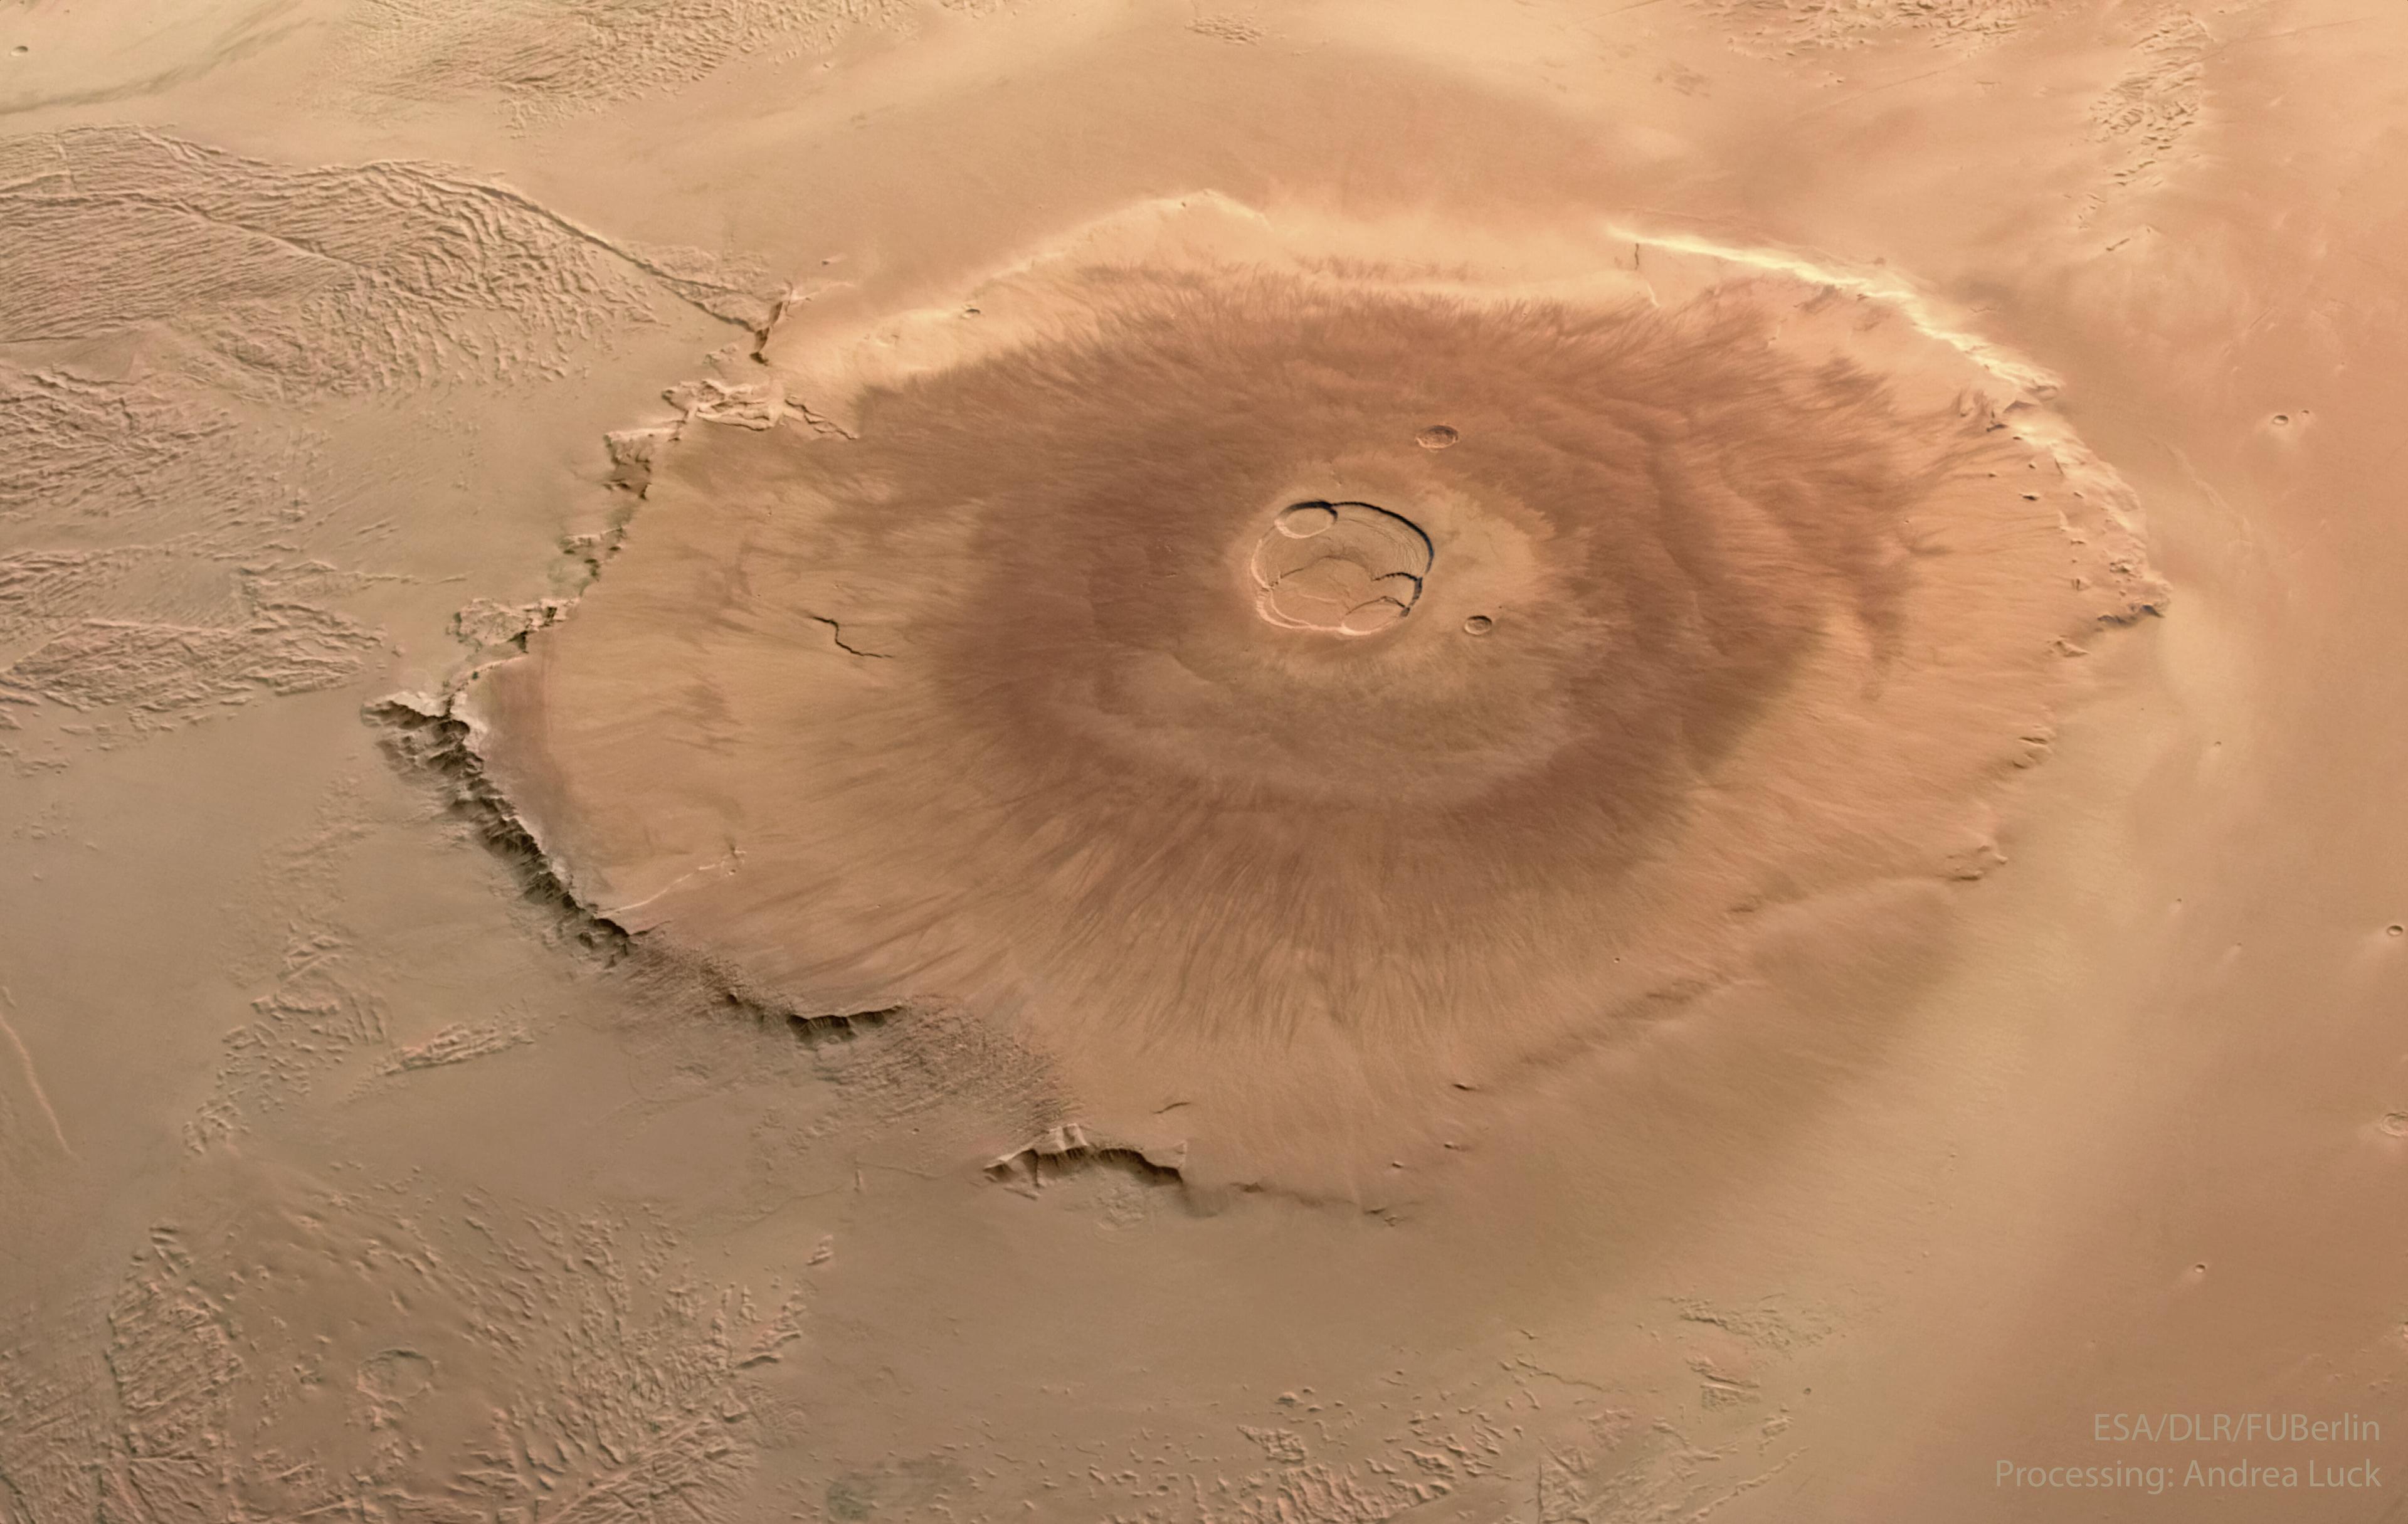 بركانٌ برتقاليٌّ كبير مُصوَّرٌ على المرّيخ من الأعلى.